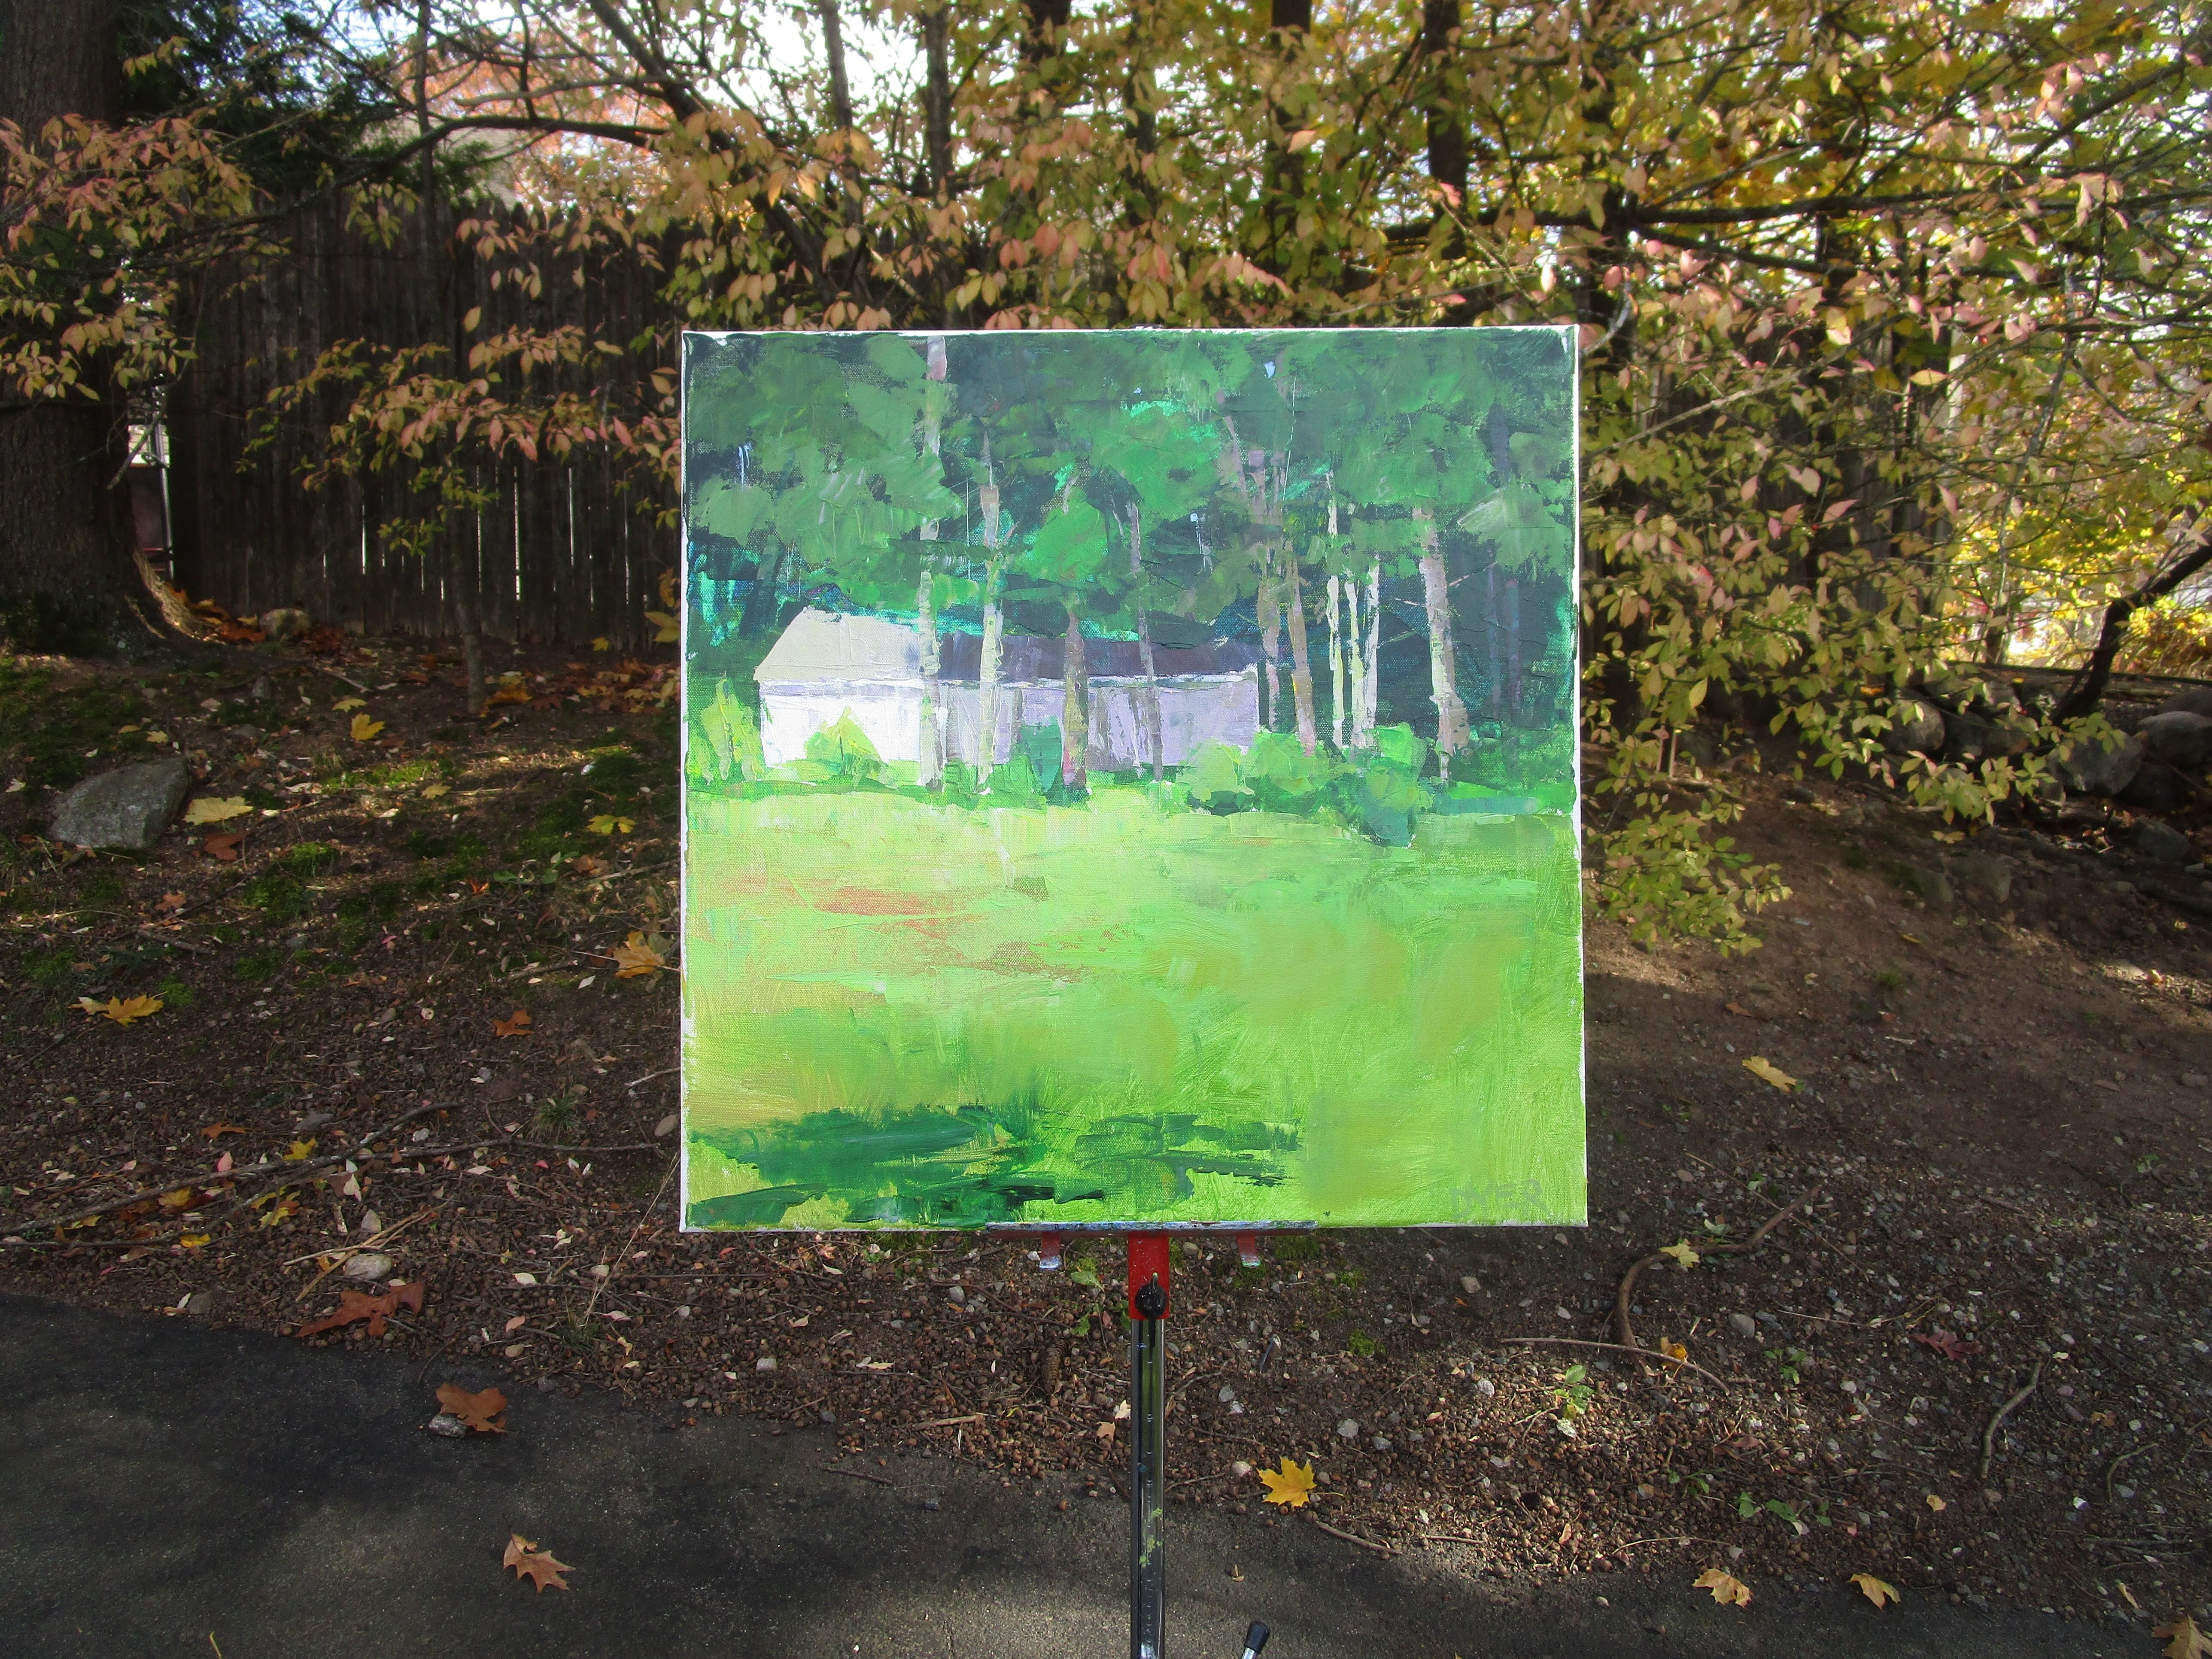 <p>Kommentare des Künstlers<br>Dieses impressionistische Gemälde fängt eine ruhige Vorstadtlandschaft ein. Ein abgelegenes Haus schmiegt sich unter ein üppiges Blätterdach, vor dem sich eine riesige Wiese ausbreitet. Das Spiel von Licht und Schatten